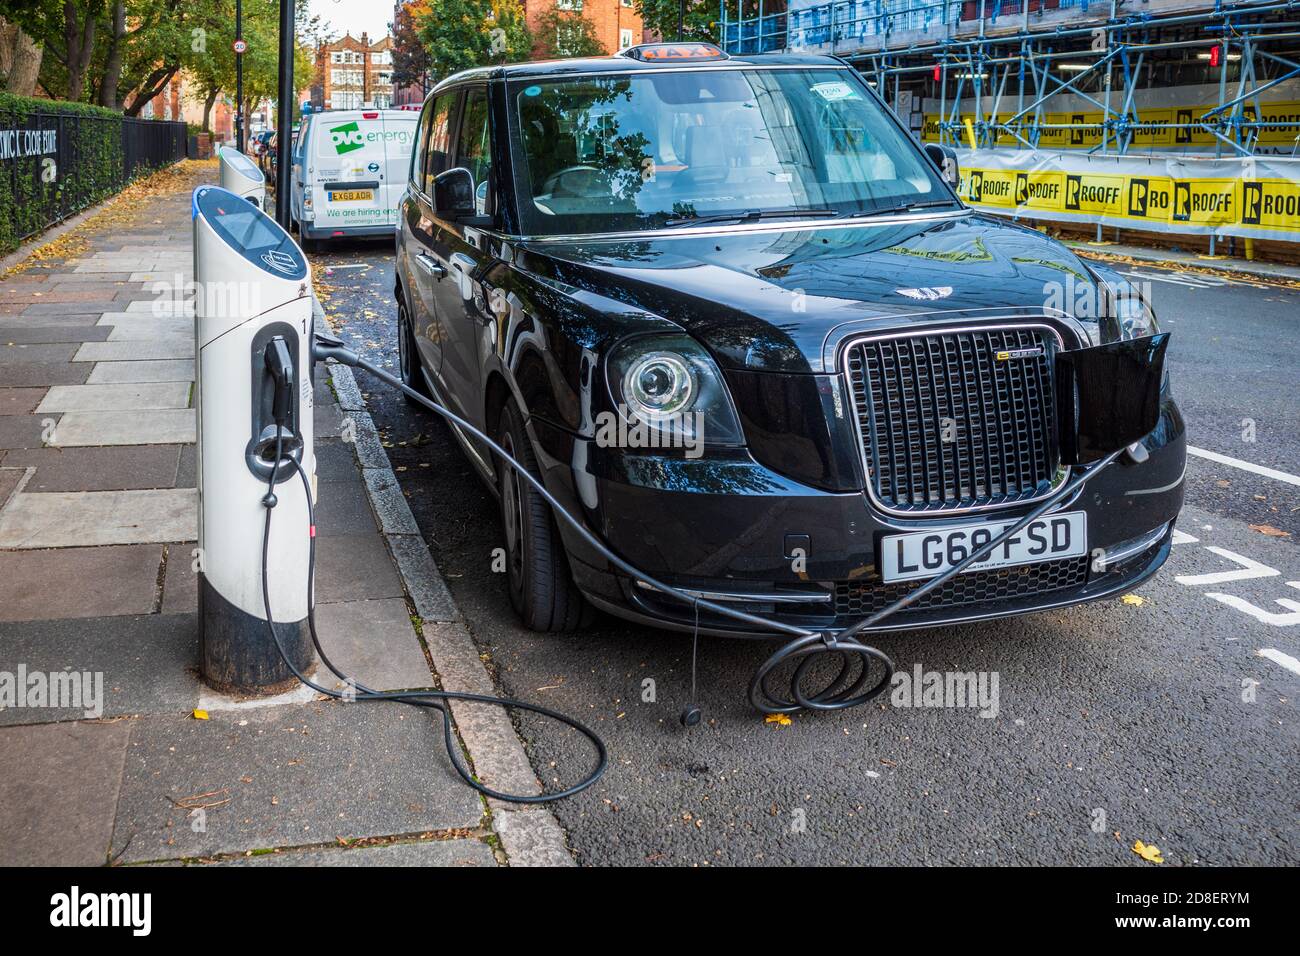 Chargement de taxi électrique - LECV TX Ecity London chargement de taxi électrique à une station de charge sur le trottoir. Banque D'Images